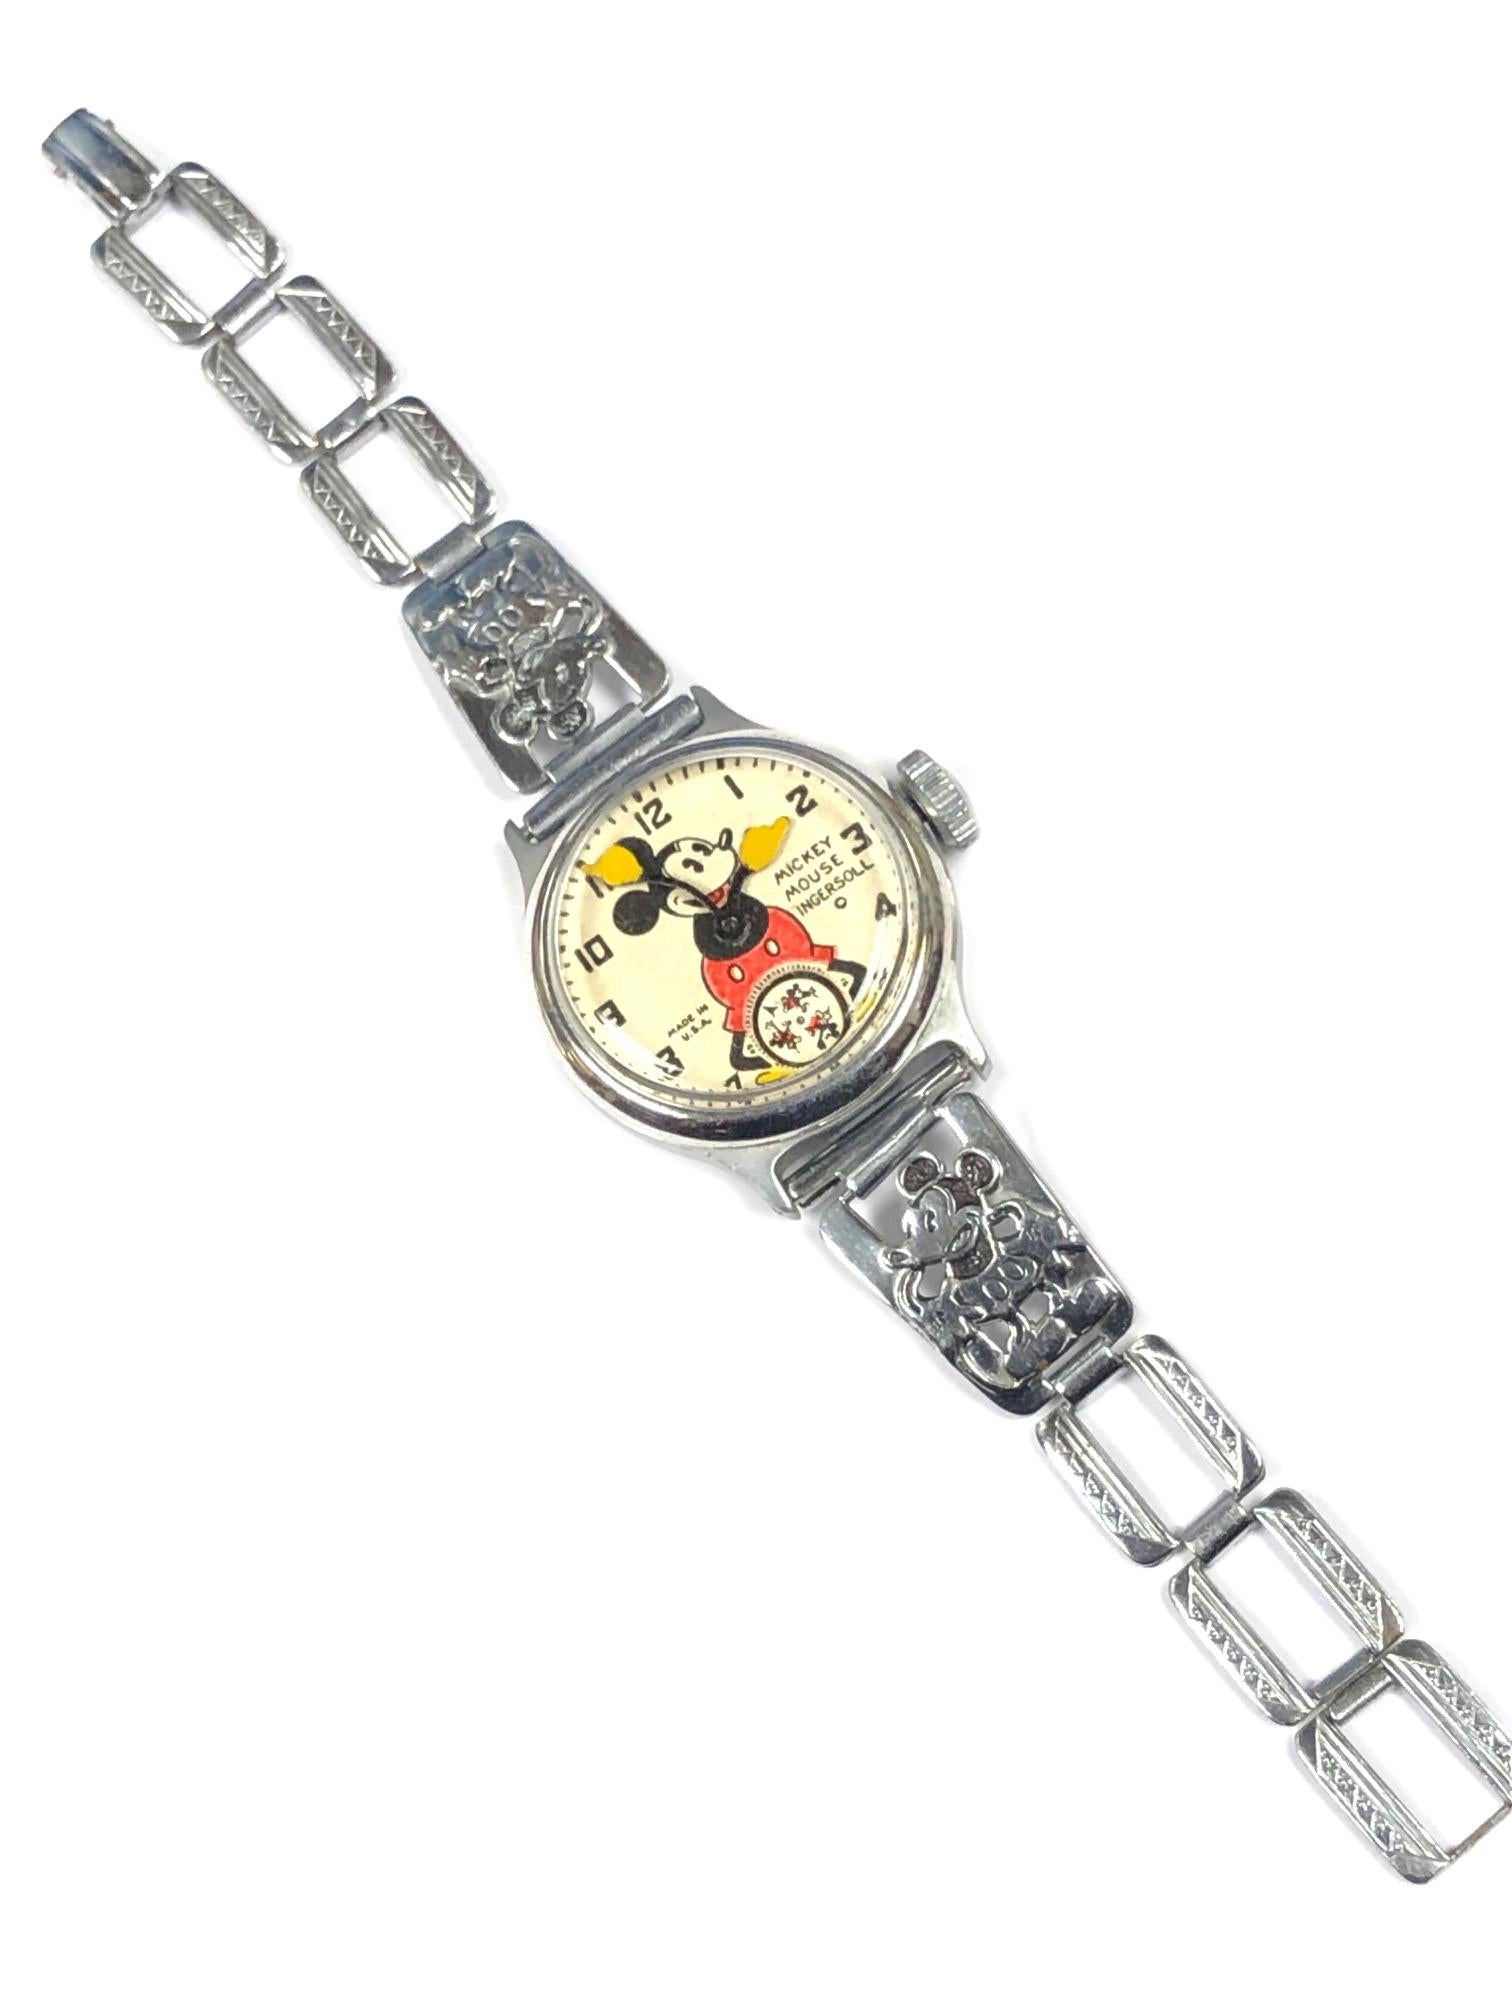 1930er Ingersoll Mickey Mouse mechanische Wind Armbanduhr für Damen oder Herren